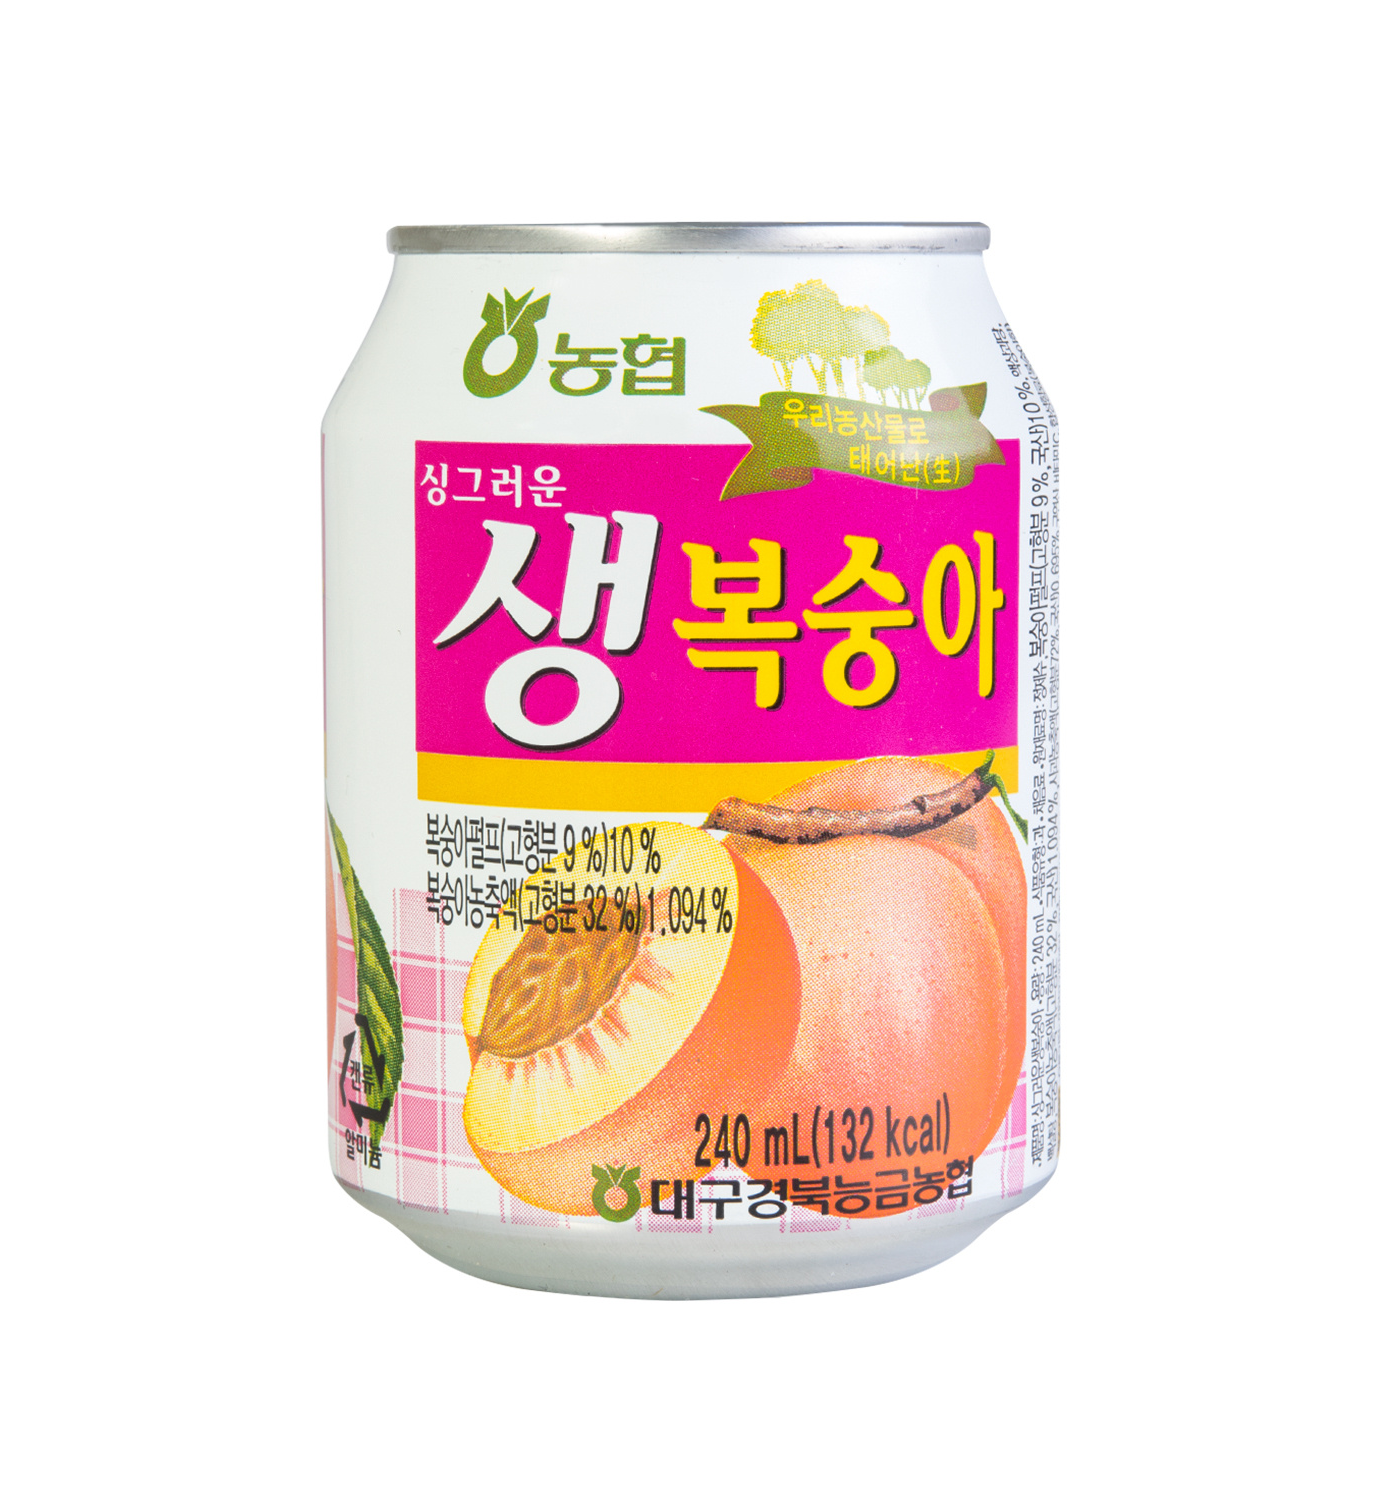 Nonghyup Korean peach drink (농협 생복숭아 쥬스)